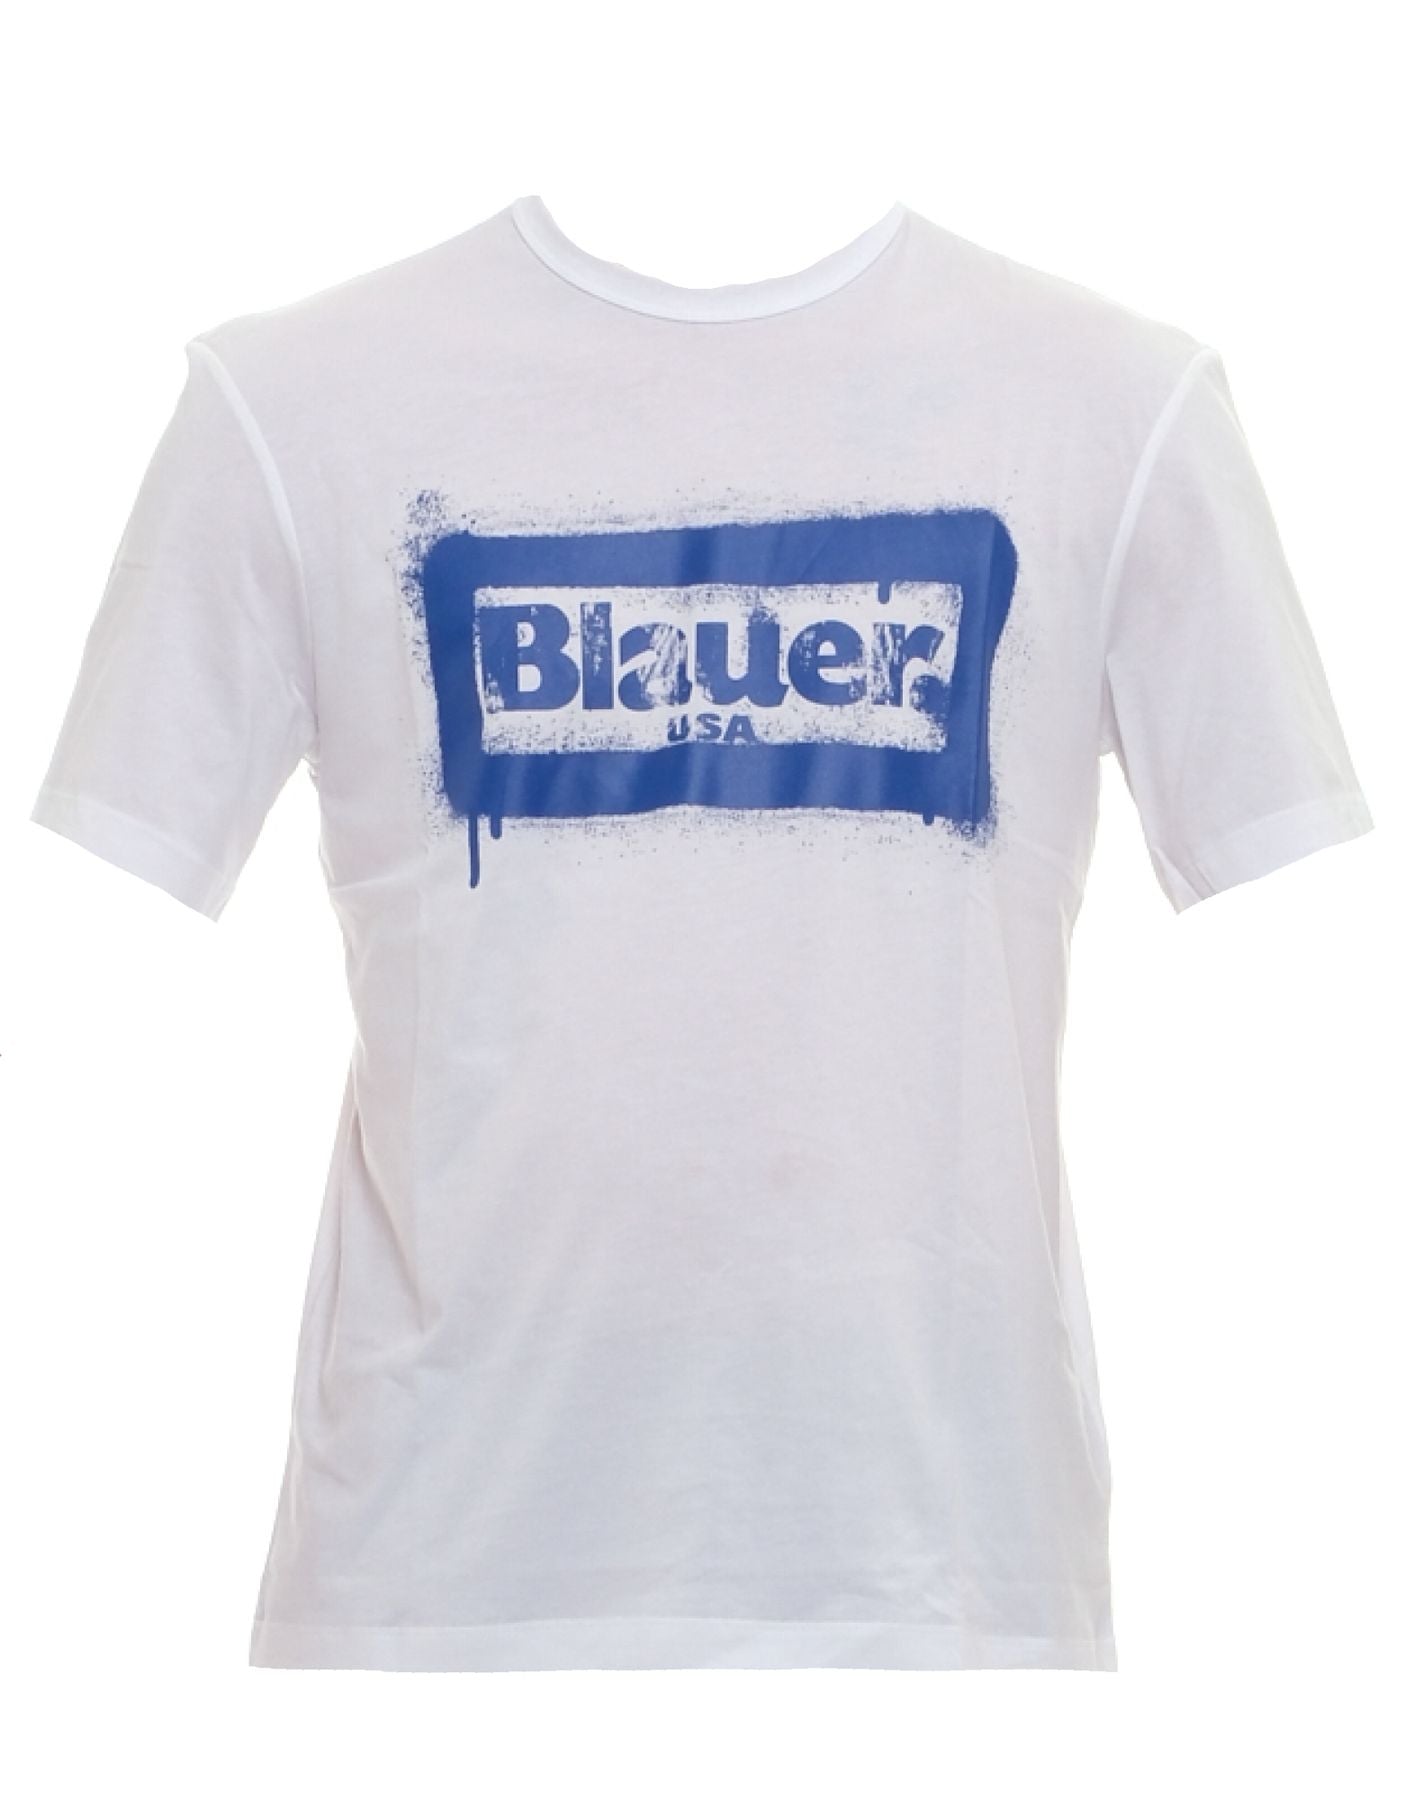 T-Shirt für Mann 24sbluh02147 004547 100 Blauer